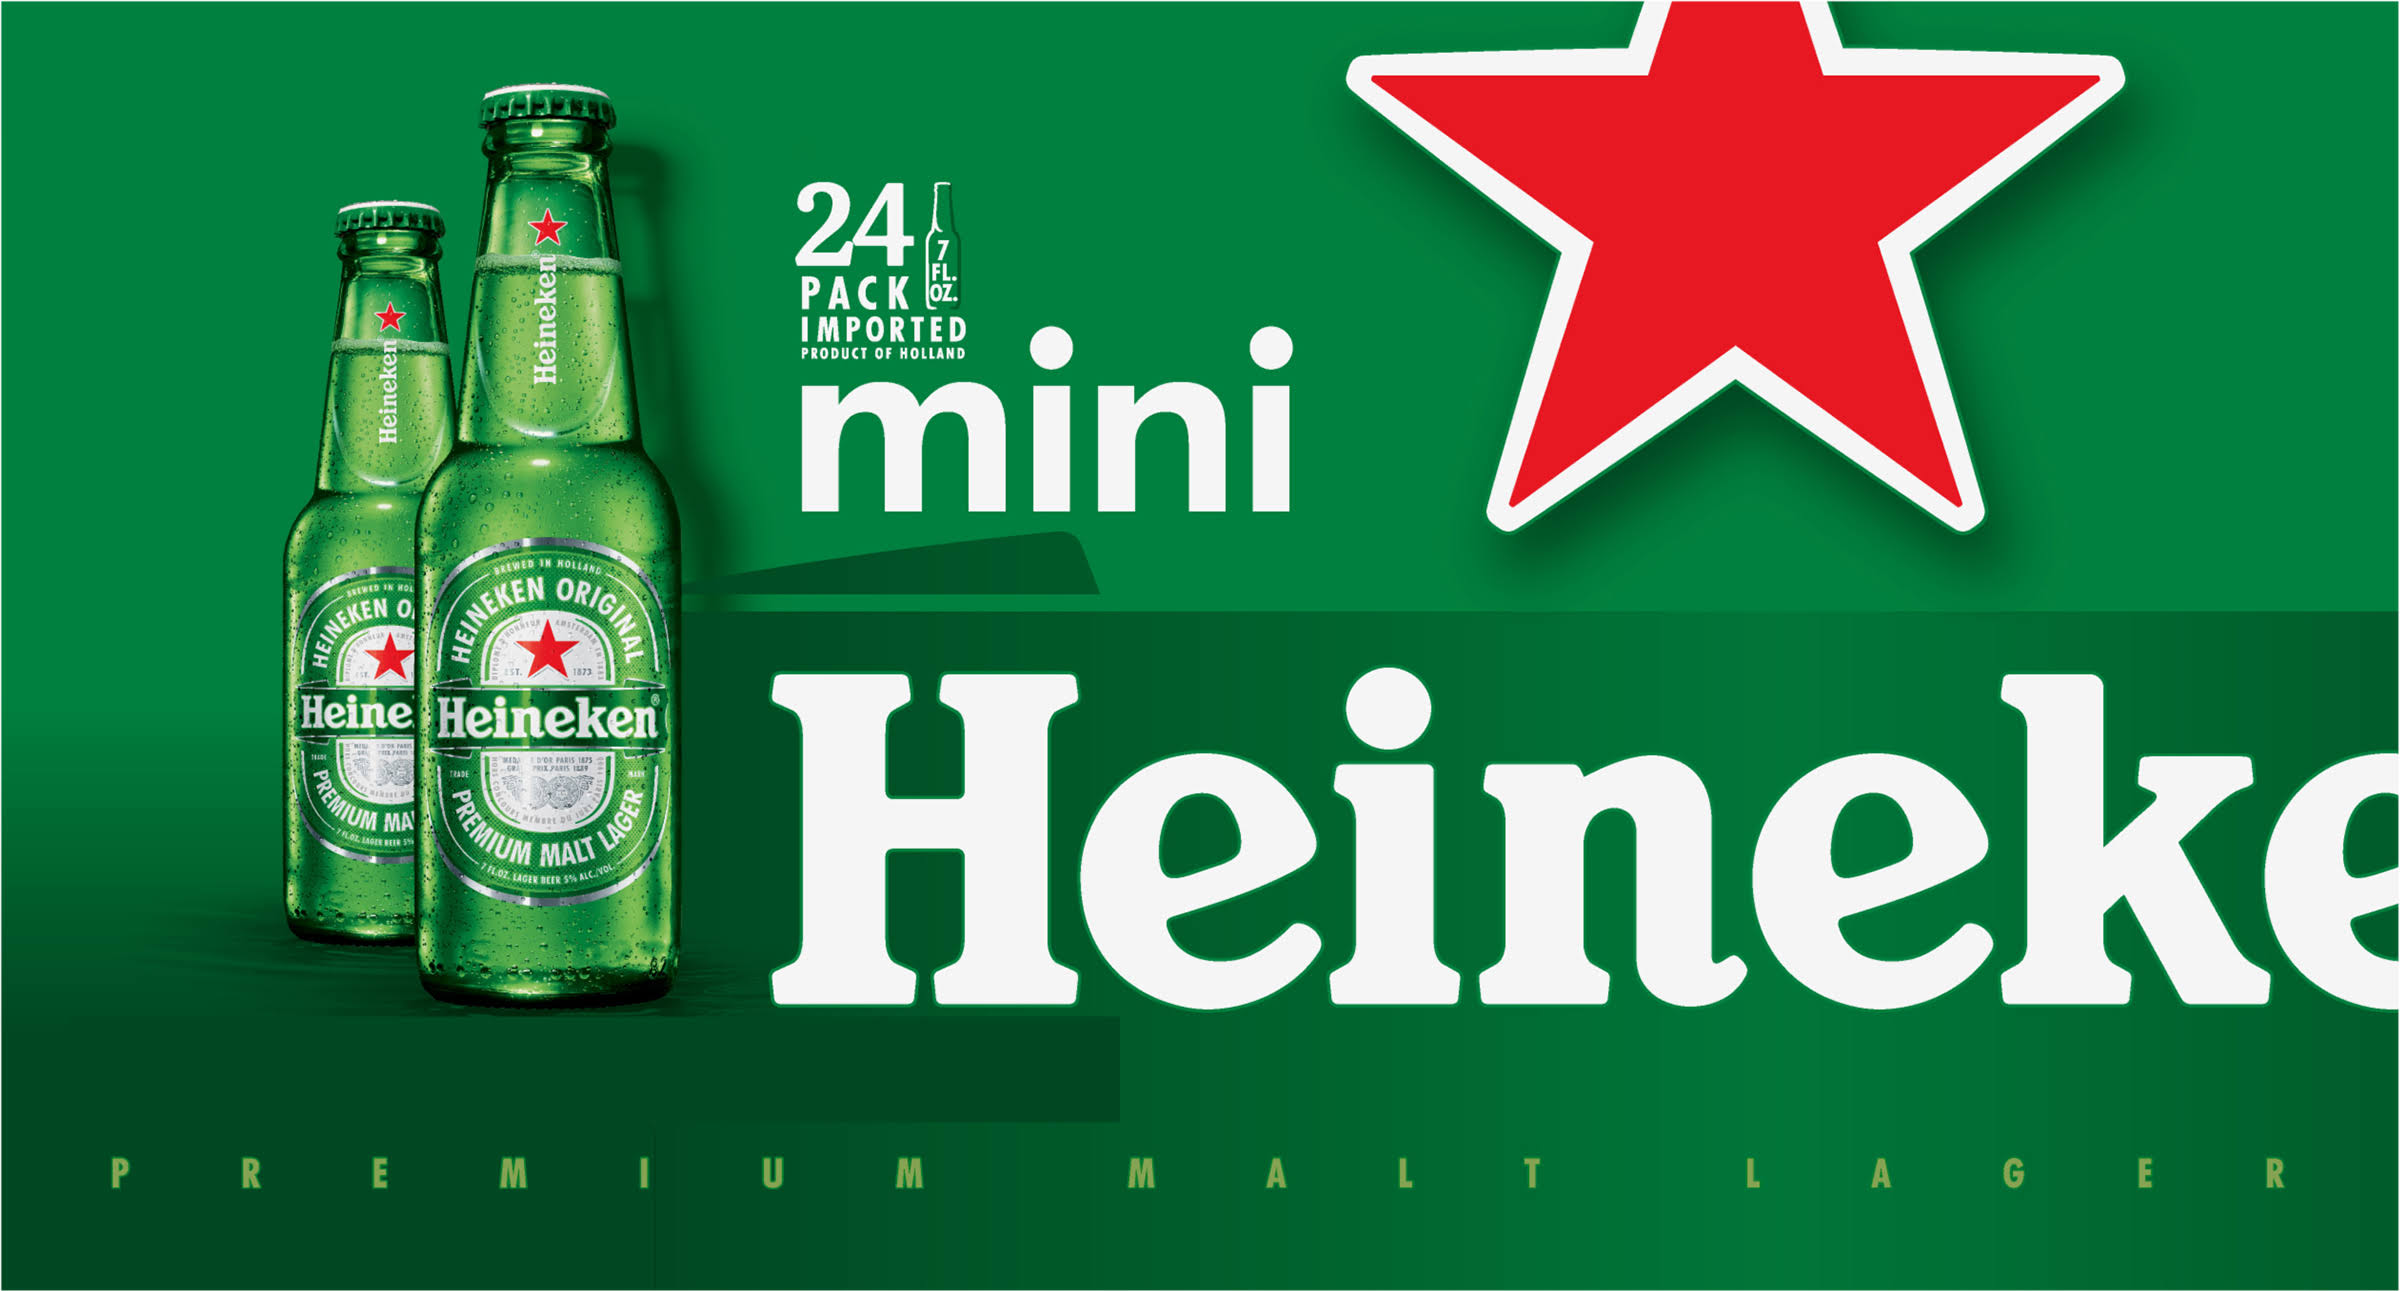 Heineken Beer, Mini, 24 Pack - 24 pack, 7 fl oz bottles